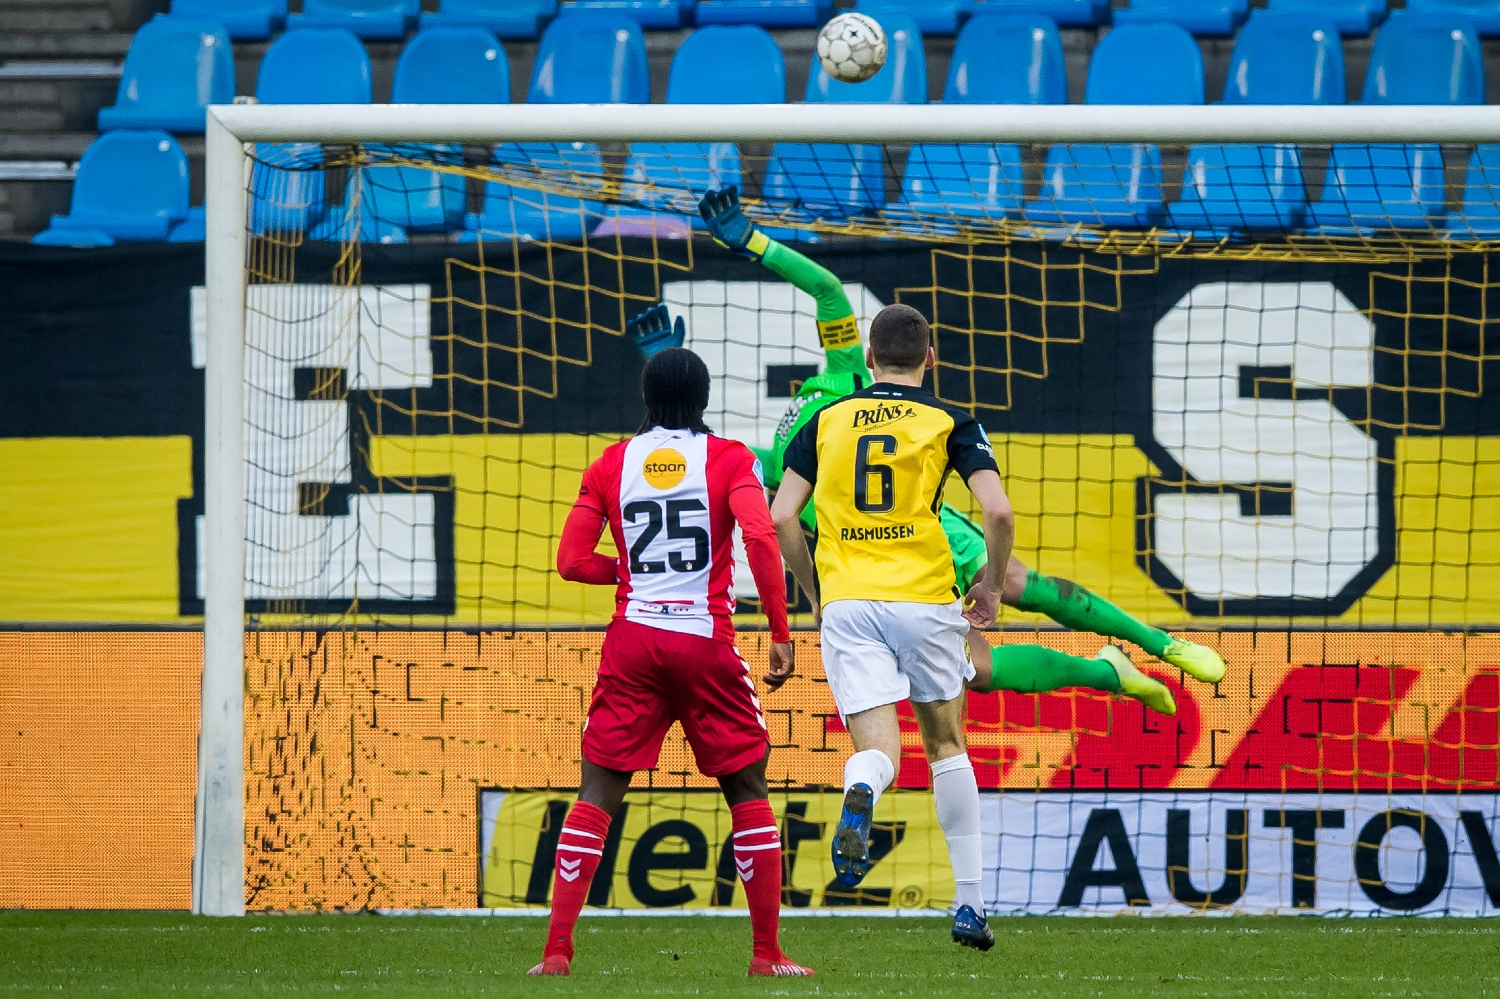 Vitesse Arnhem goalkeeper Remko Pasveer making a flying save from Emmen